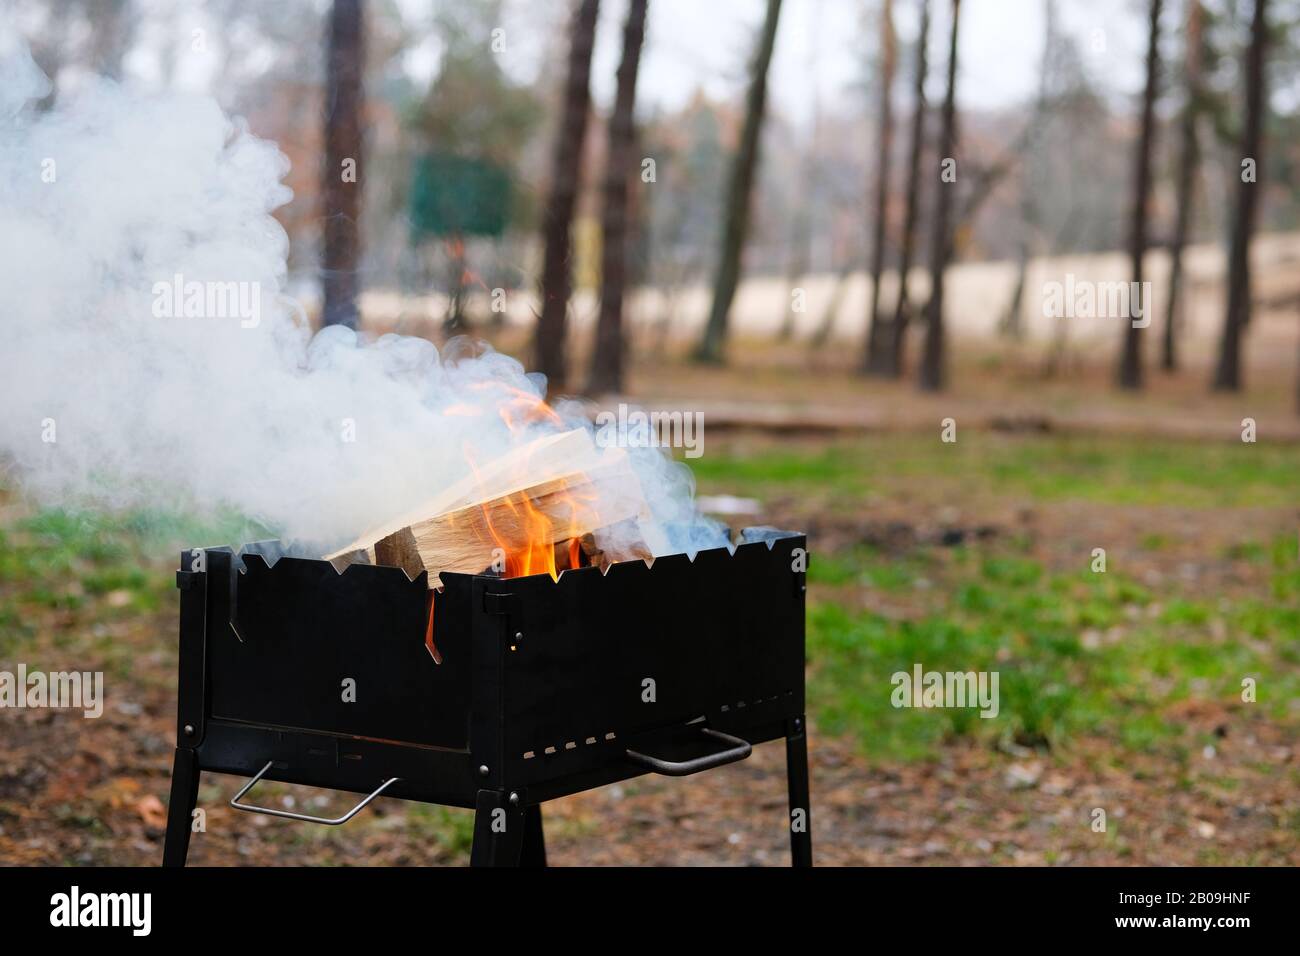 Grill mit brennendem Brennholz. Holzfeuer für Barbecue vorbereitet. Grillsaison in der Natur geöffnet. Stockfoto